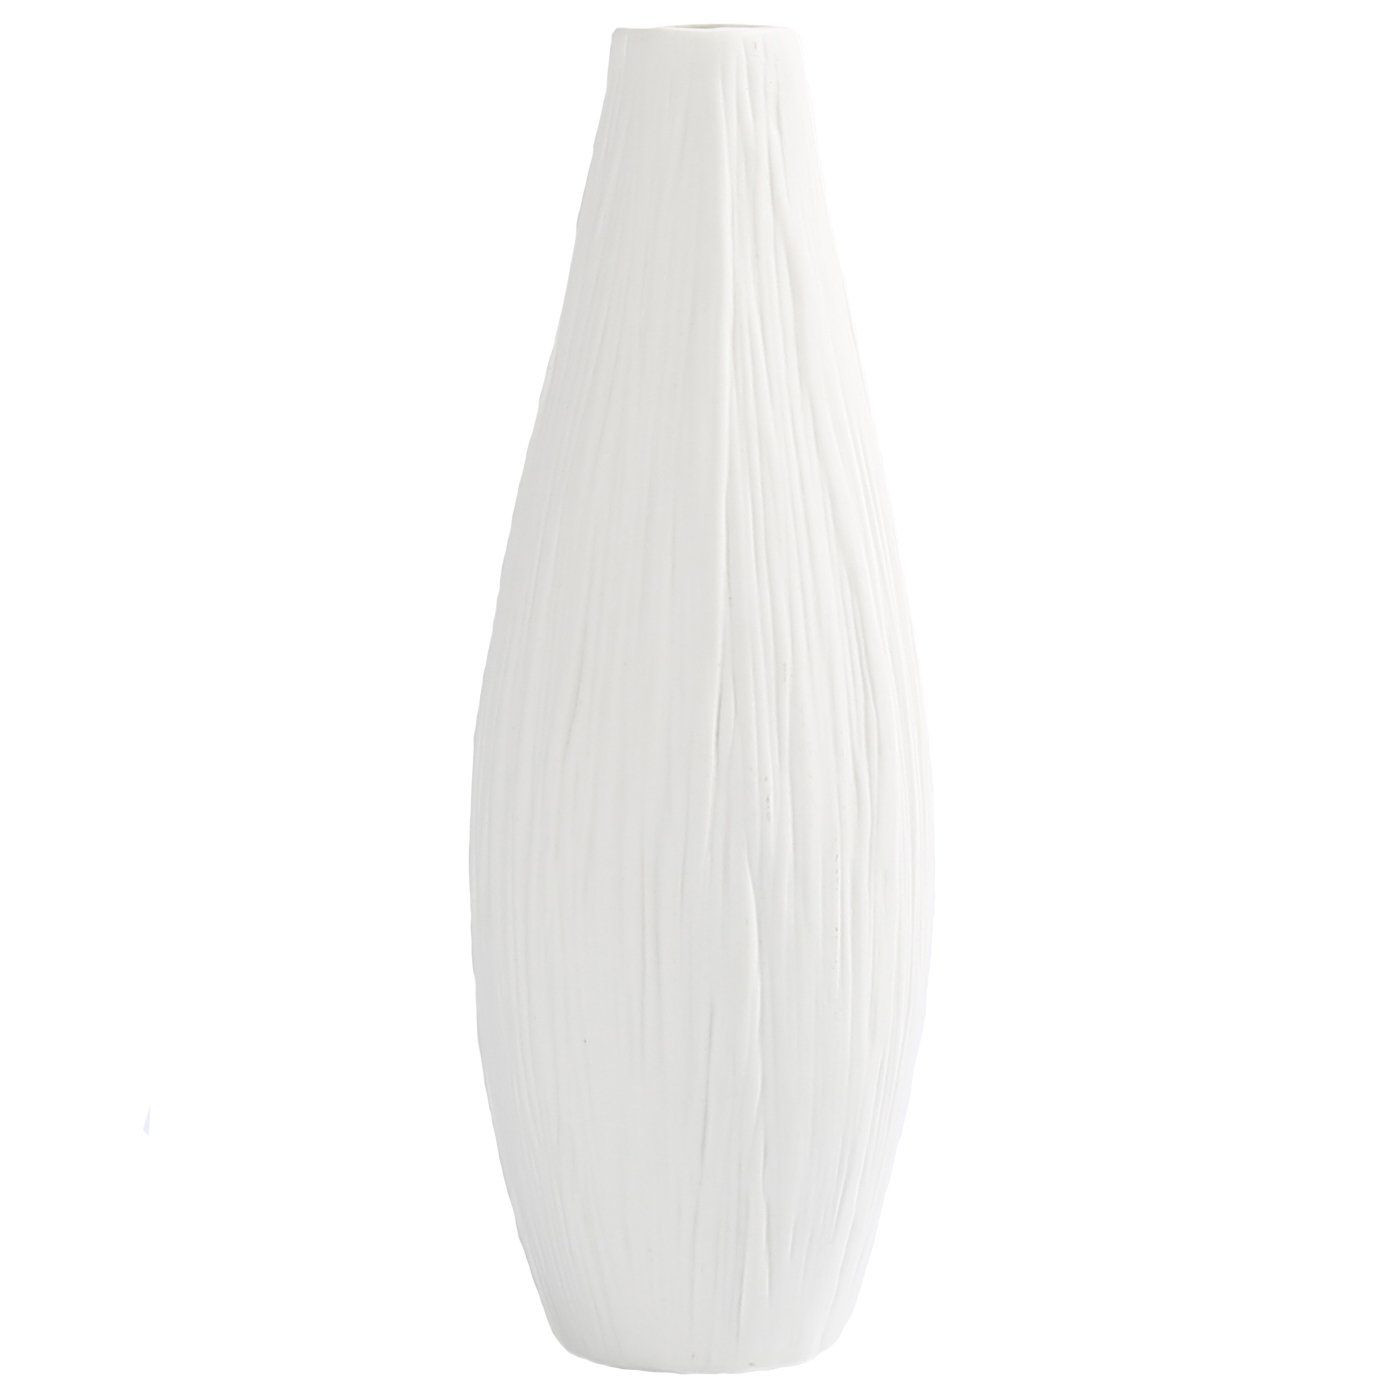 rustic wooden vases uk of dvine dev 10 pure white ceramic flower vase tall oval intended for dvine dev 10 pure white ceramic flower vase tall oval